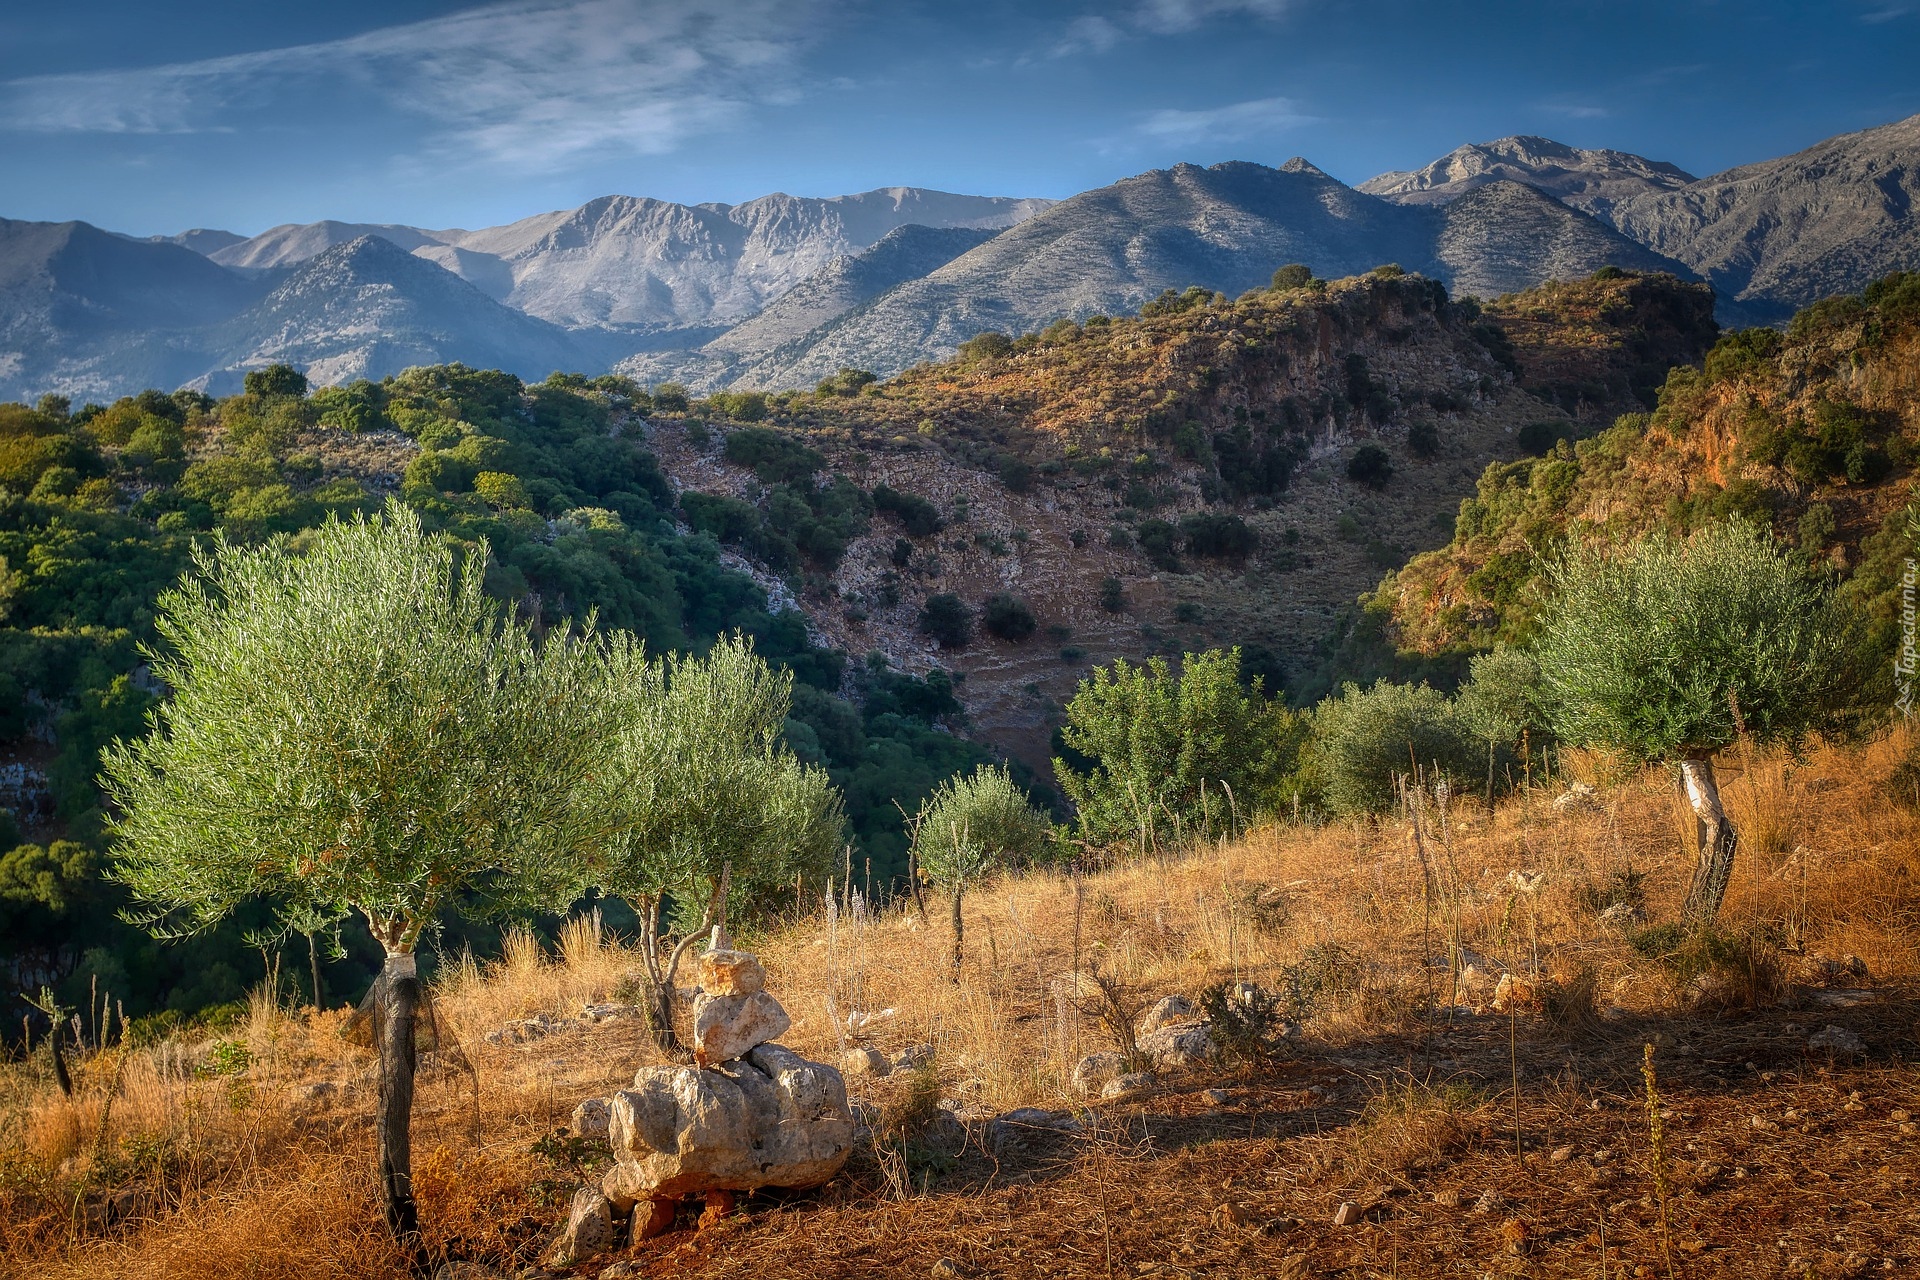 Drzewa oliwne, Góry, Kreta, Grecja